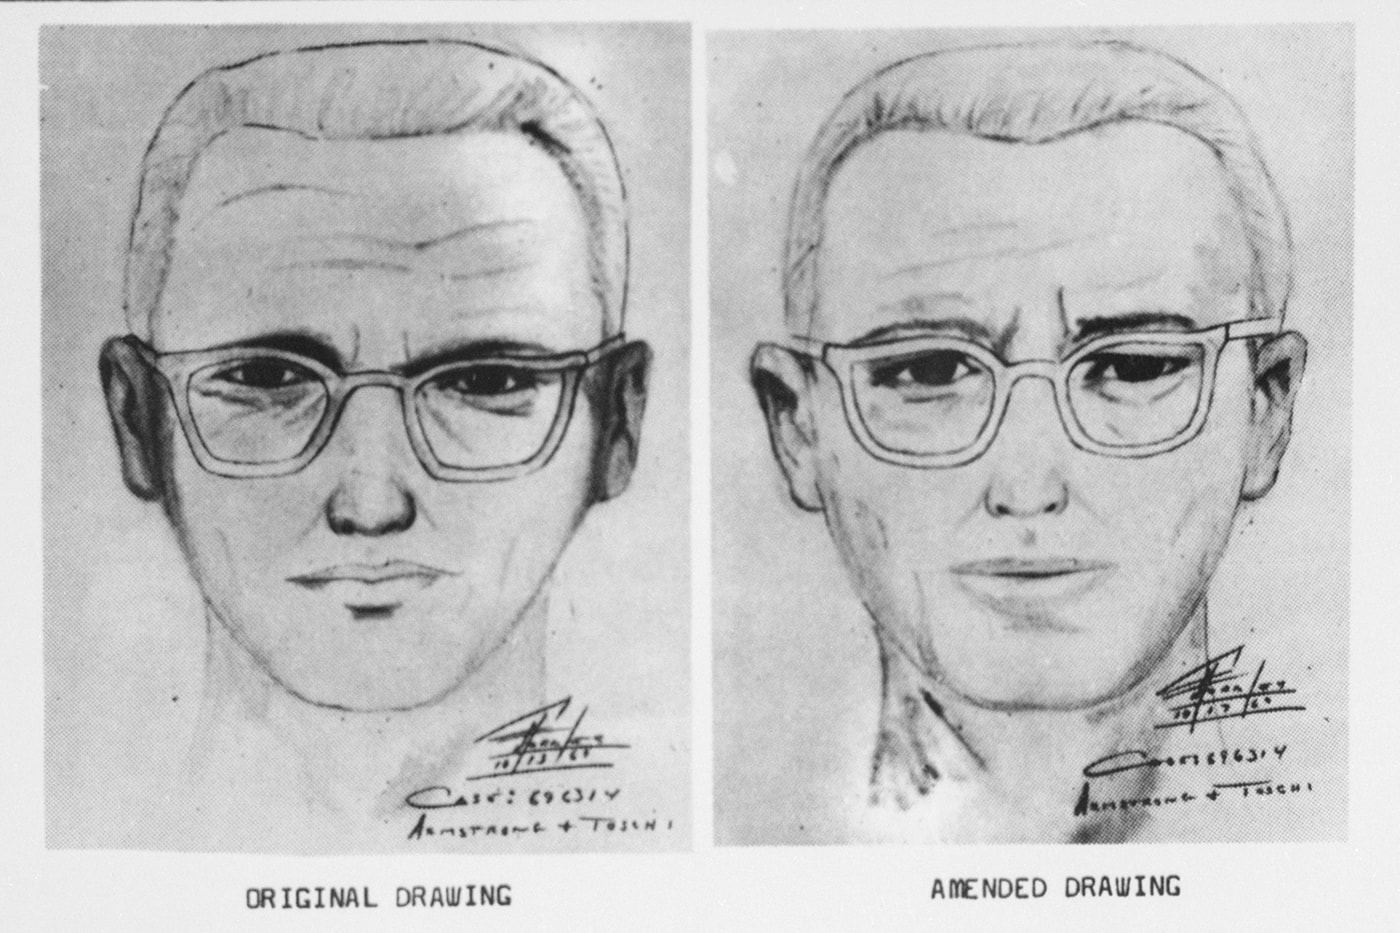 희대의 연쇄살인마, ‘조디악 킬러’가 남긴 암호문이 51년 만에 풀렸다, 미국 연방수사국, FBI